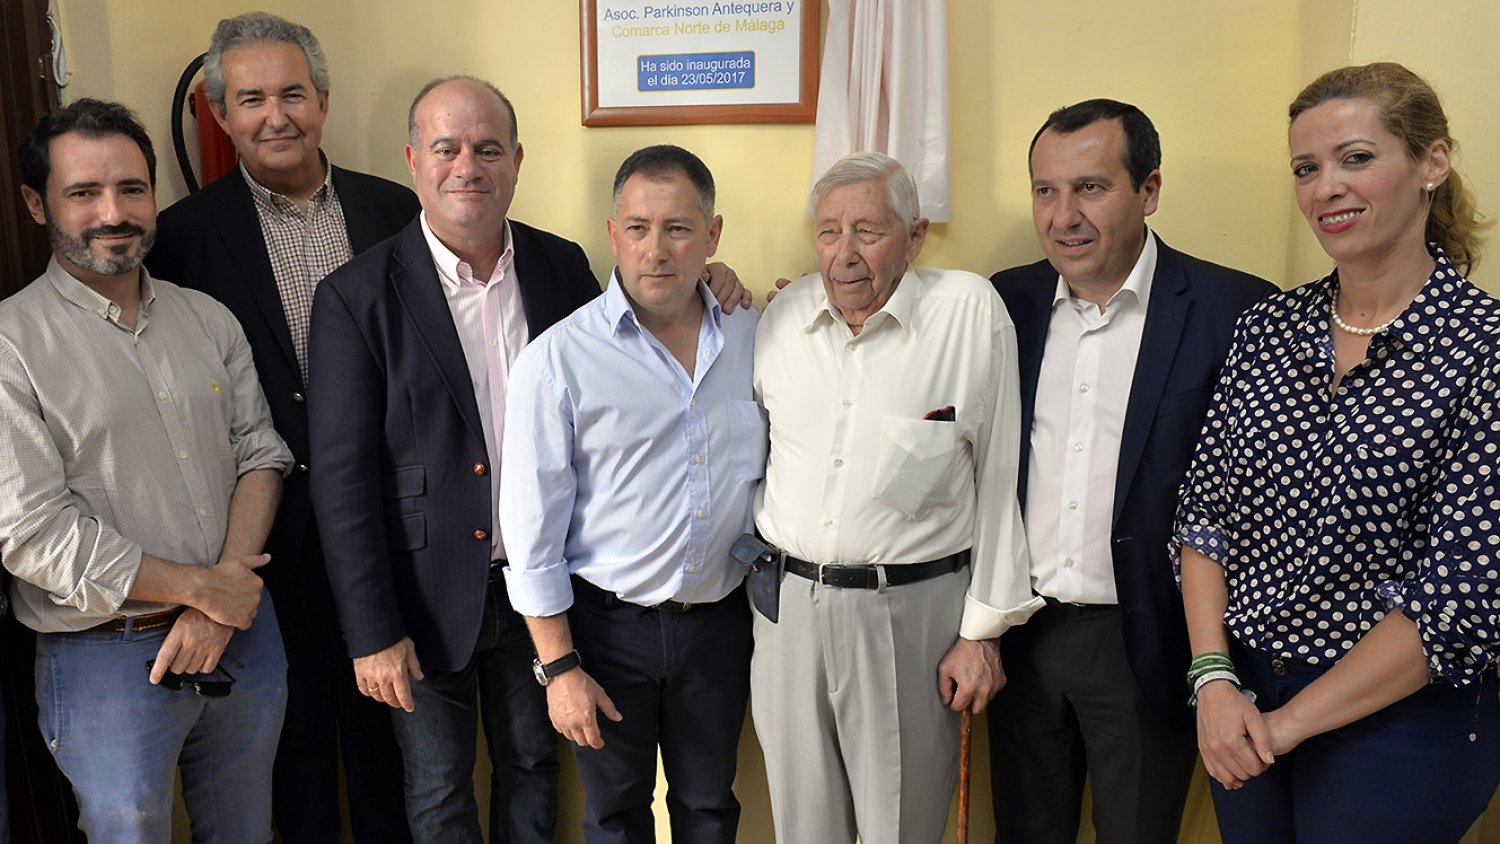 El alcalde de Antequera asiste a la inauguración de la sede social de la Asociación Parkinson Antequera